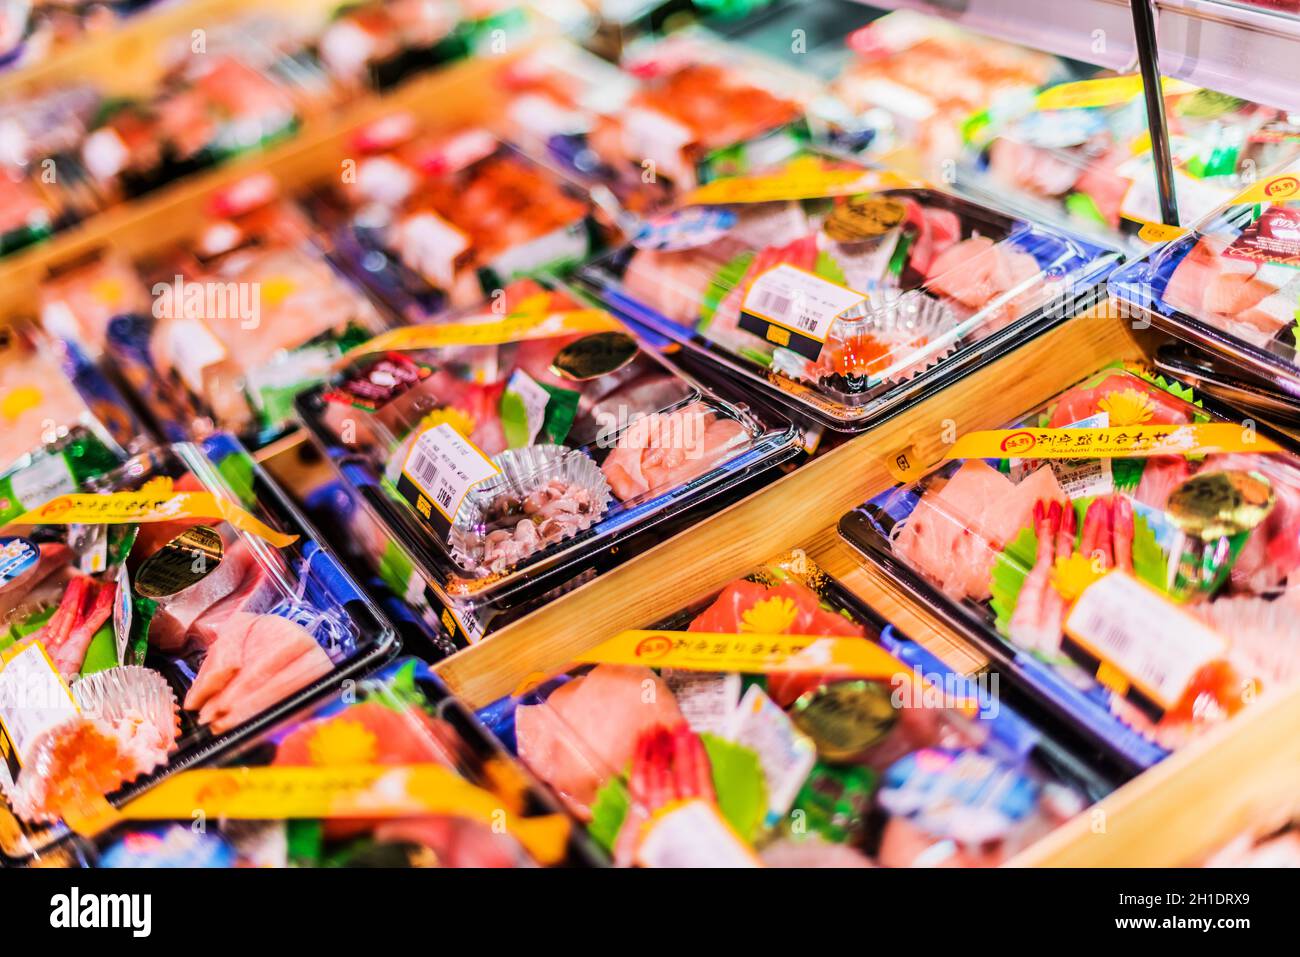 SINGAPUR - MAR 3, 2020: Fertigverpackte, verzehrfertige Meeresfrüchte, die in einem handelsüblichen Kühlschrank zum Verkauf stehen Stockfoto